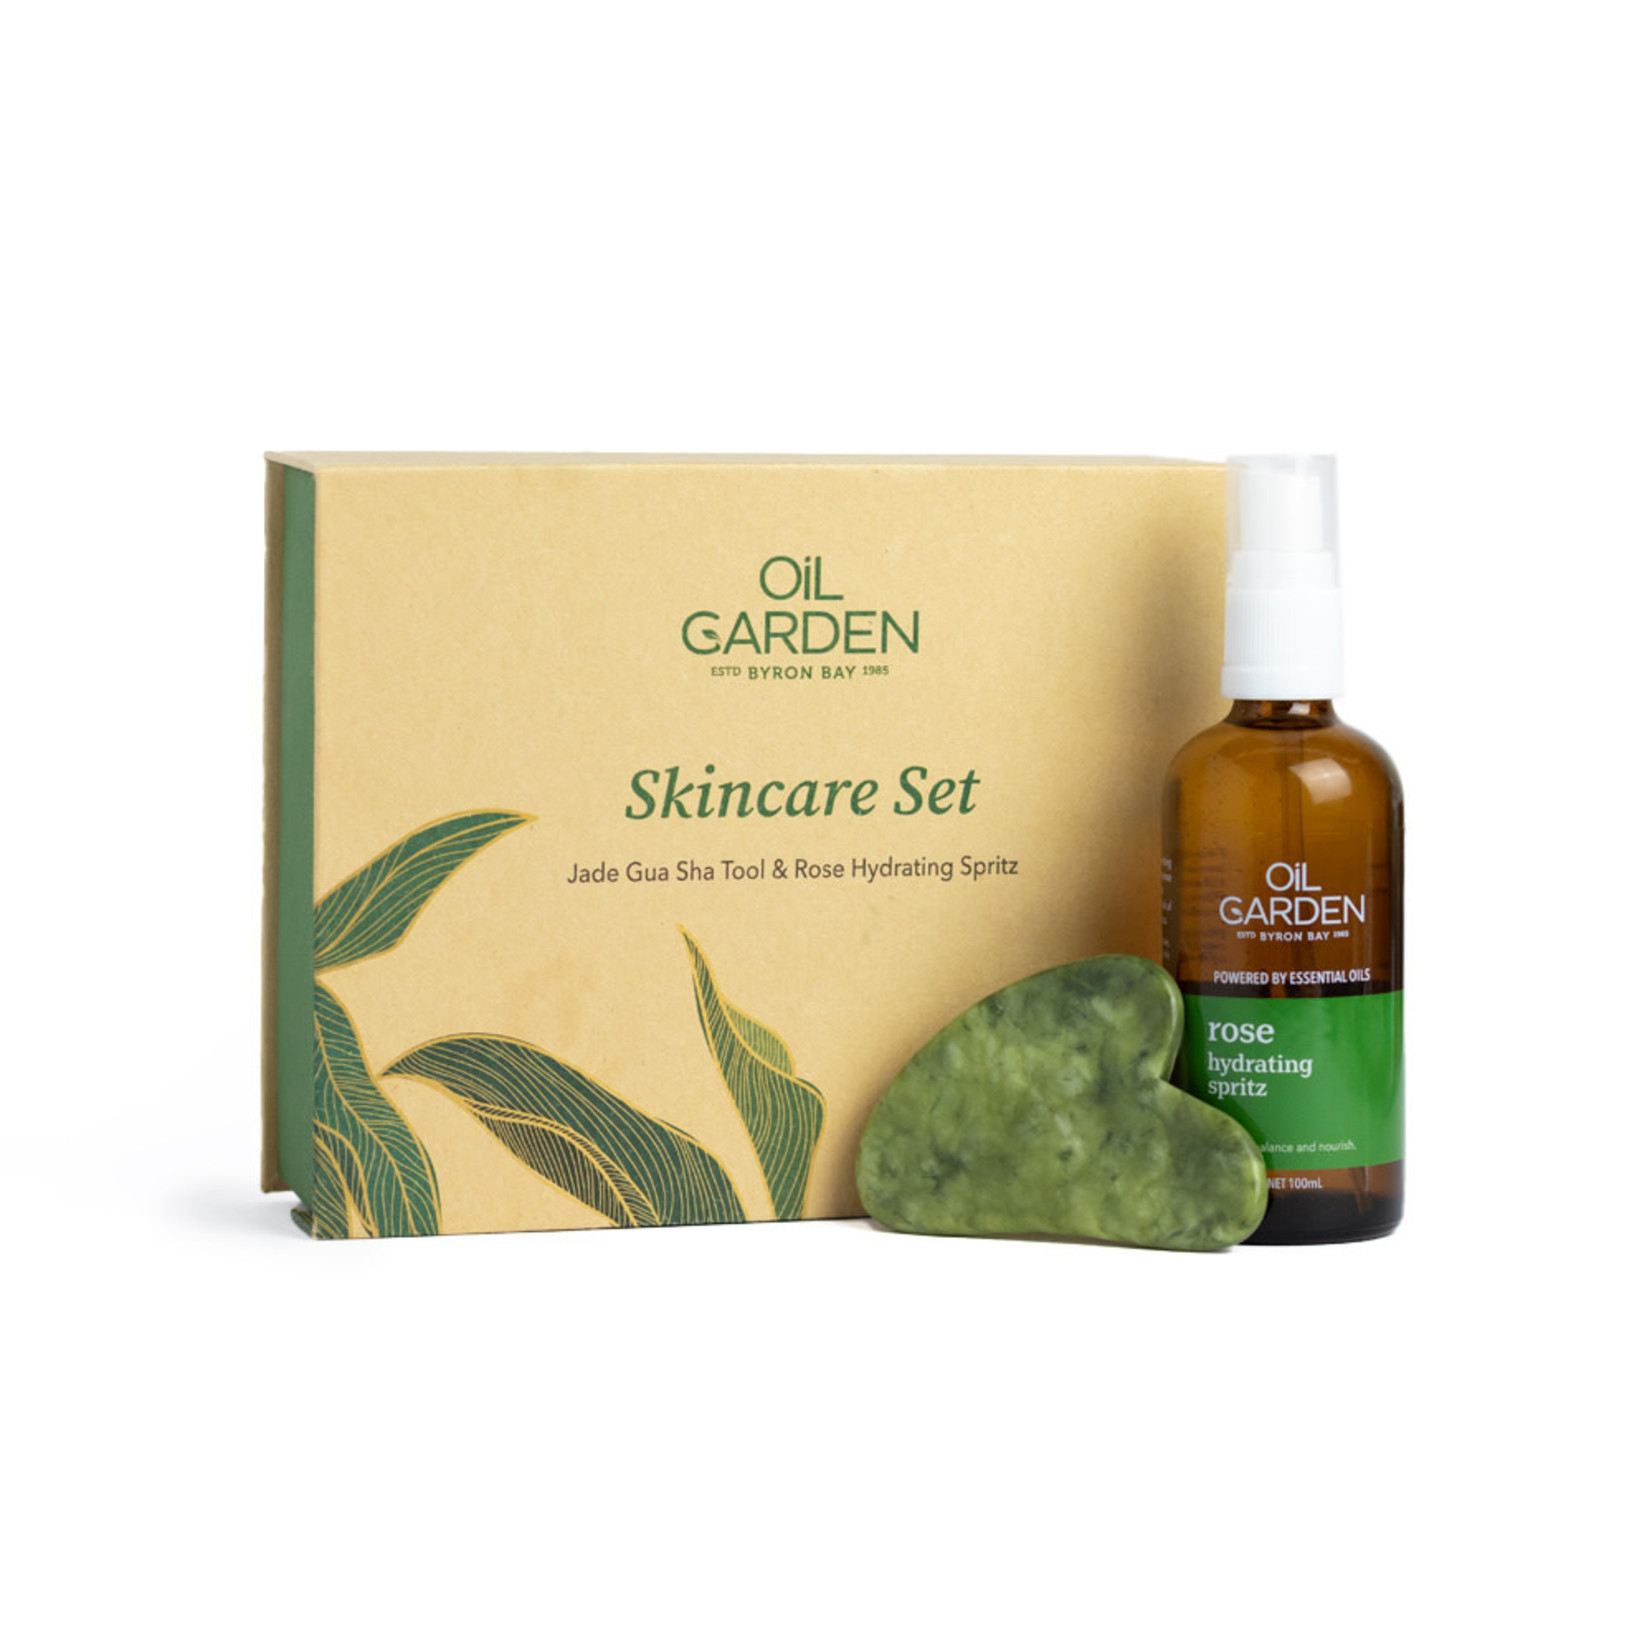 Oil Garden Oil Garden Skincare Set with Jade Gua Sha